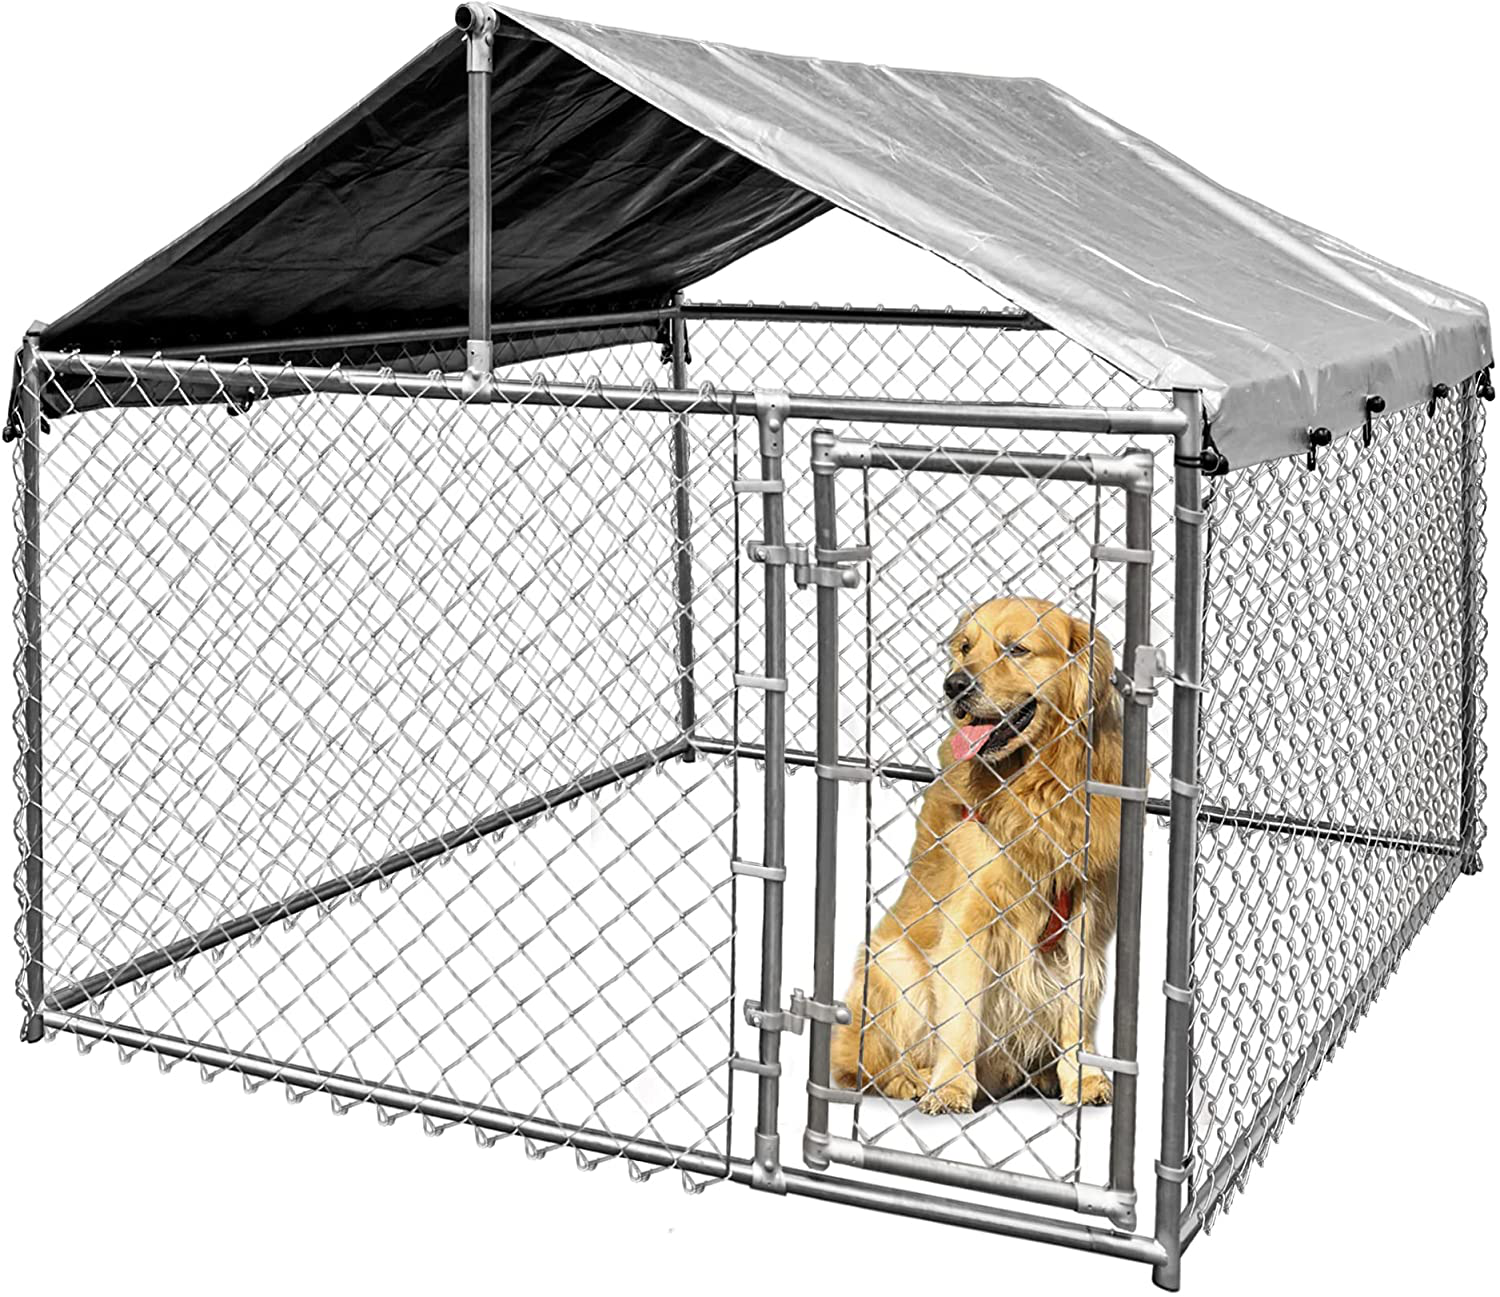 Grand chenil pour chien Outdoor Pet Run Enclosure Playpen Metal